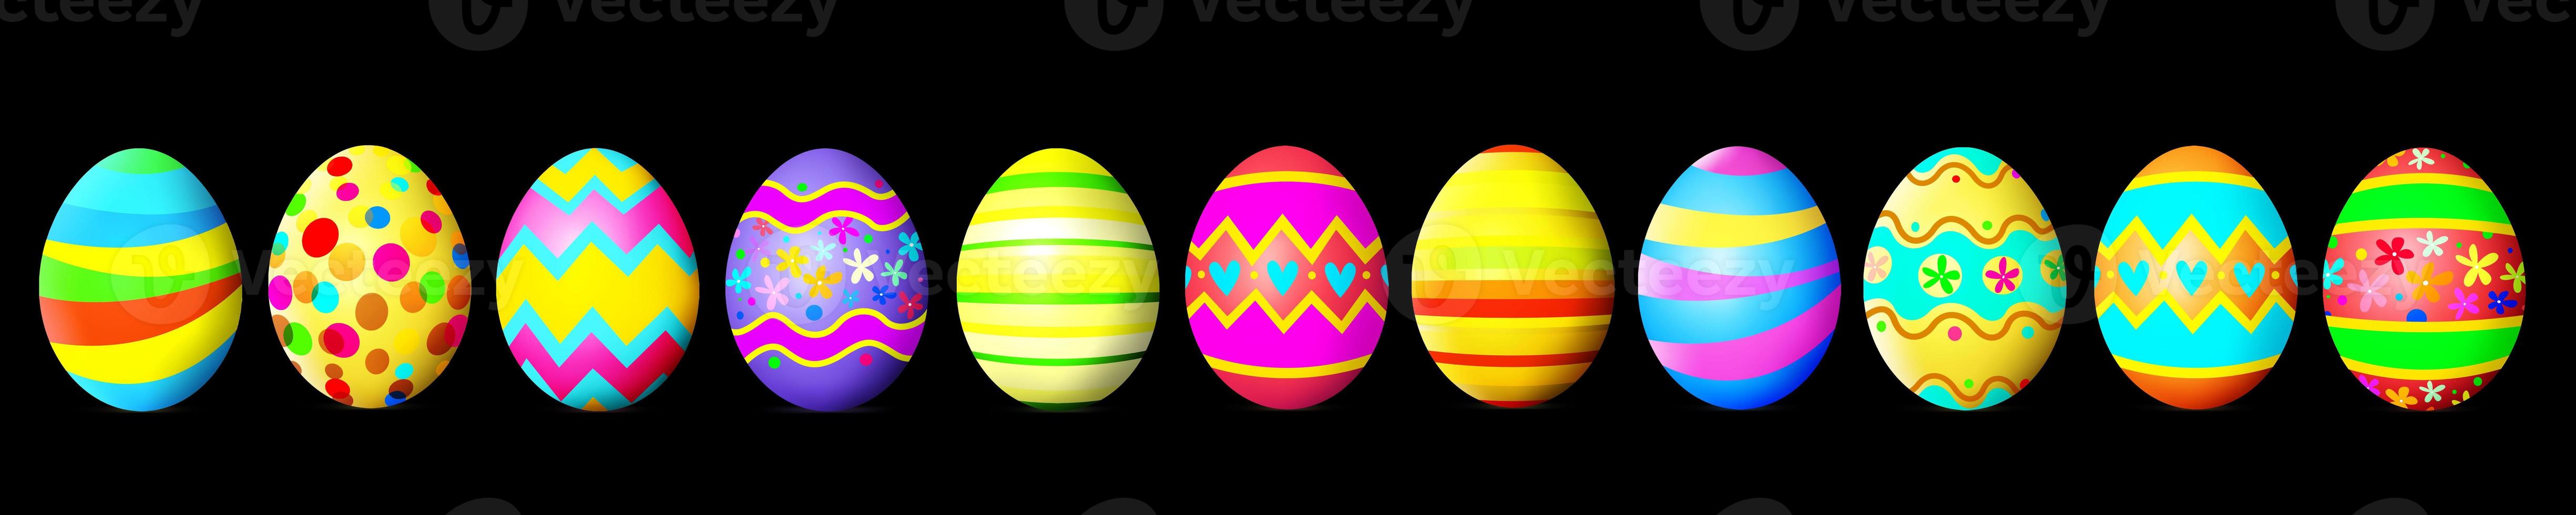 lindo fundo de páscoa com ovos de páscoa coloridos. ilustração 3D foto